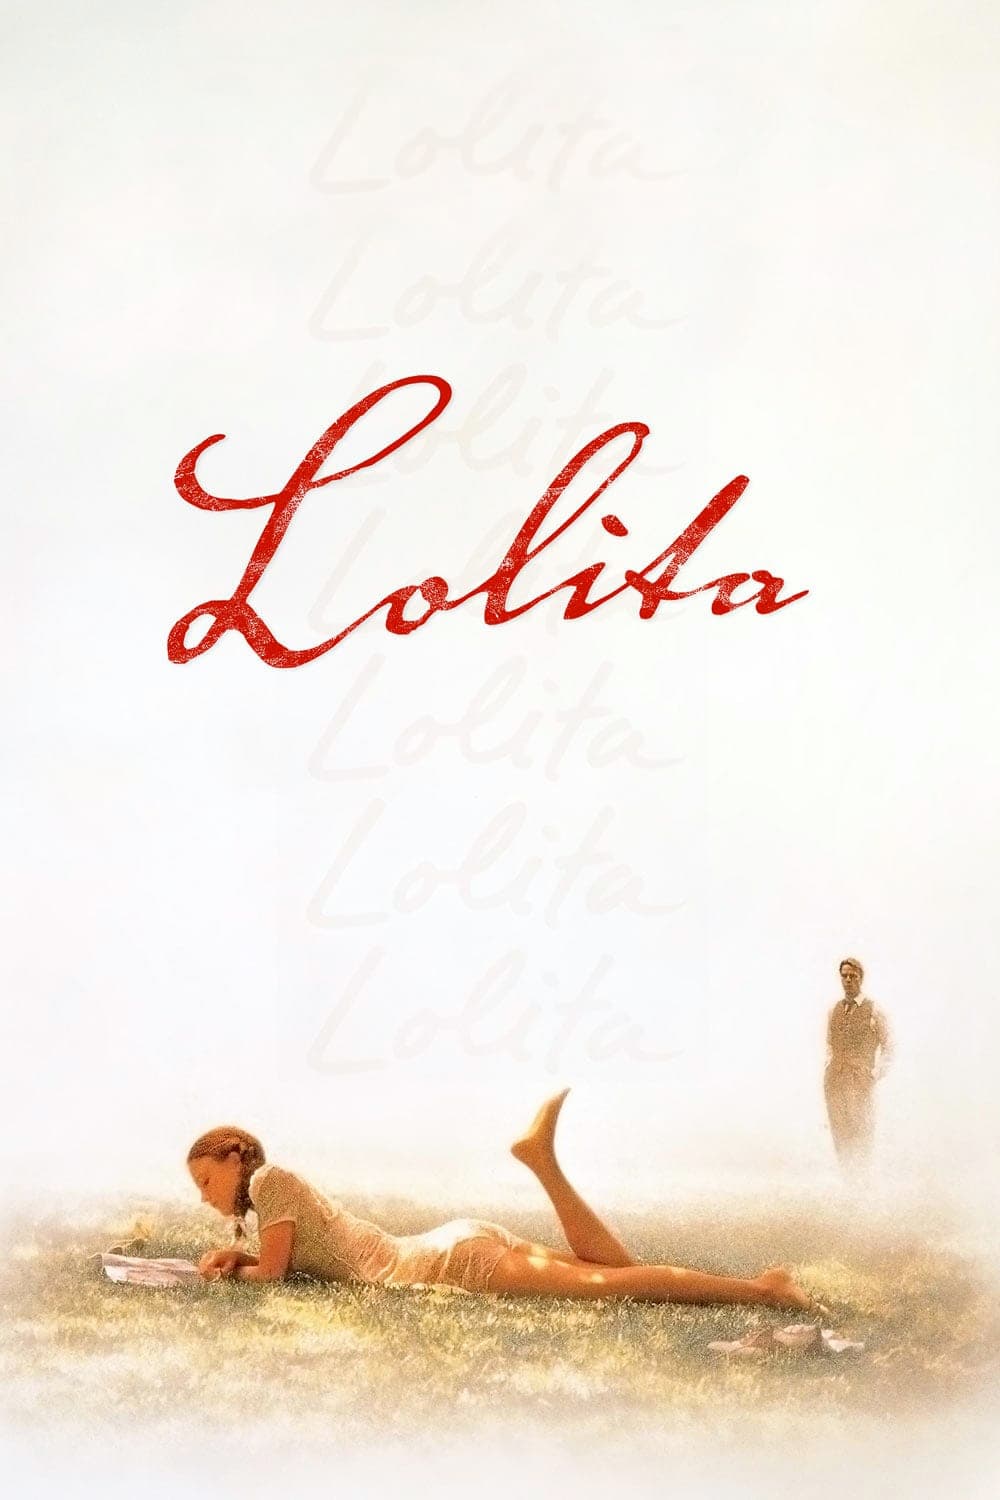 Lolita Picture